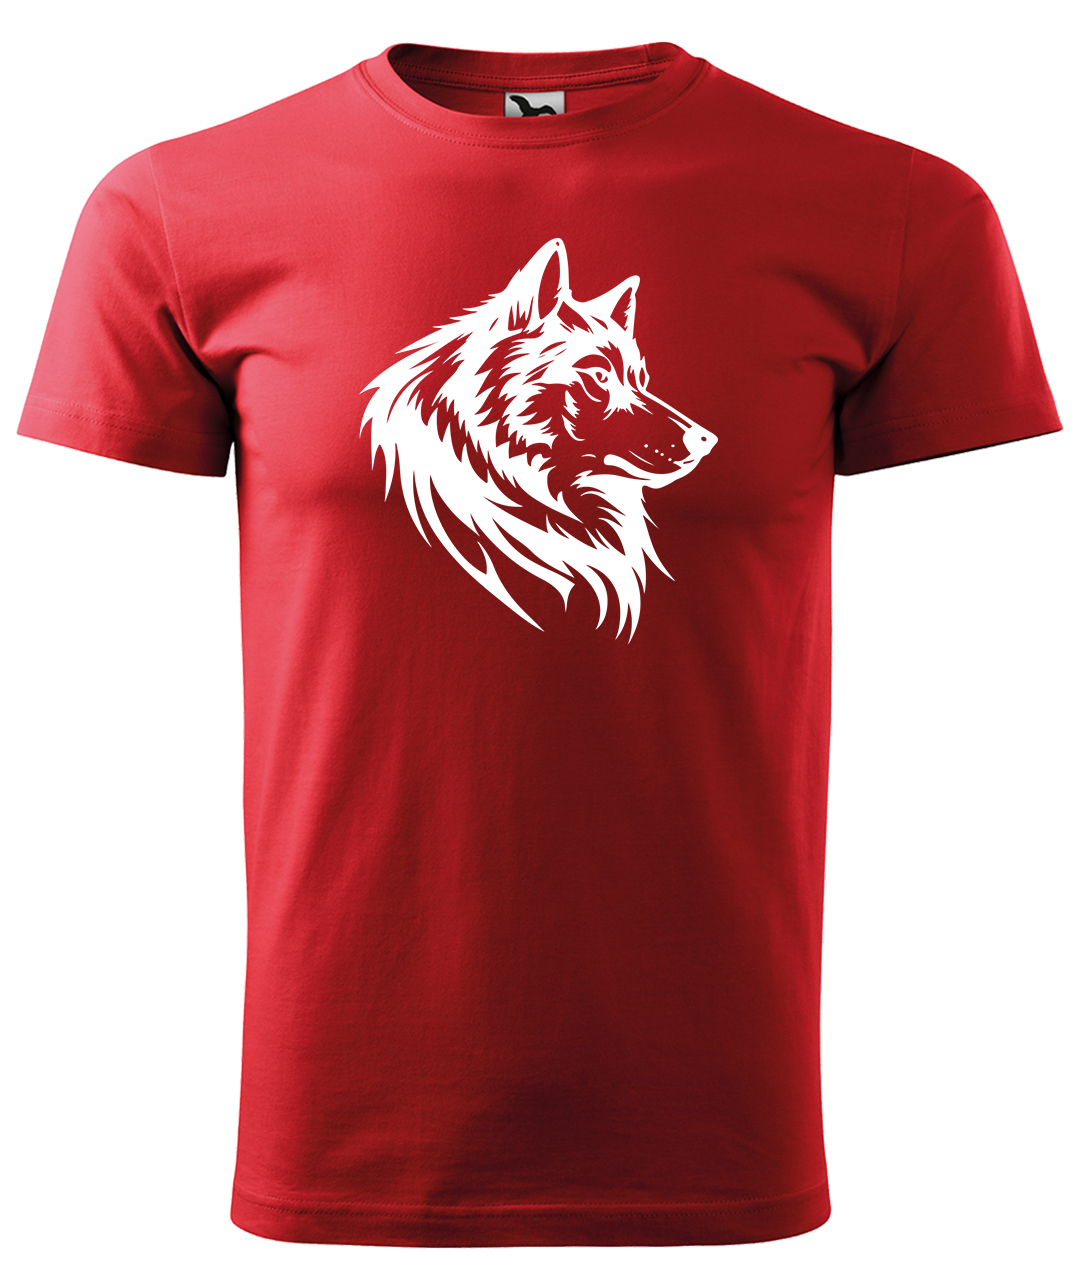 Dětské tričko s vlkem - Wolf Velikost: 12 let / 158 cm, Barva: Červená (07), Délka rukávu: Krátký rukáv